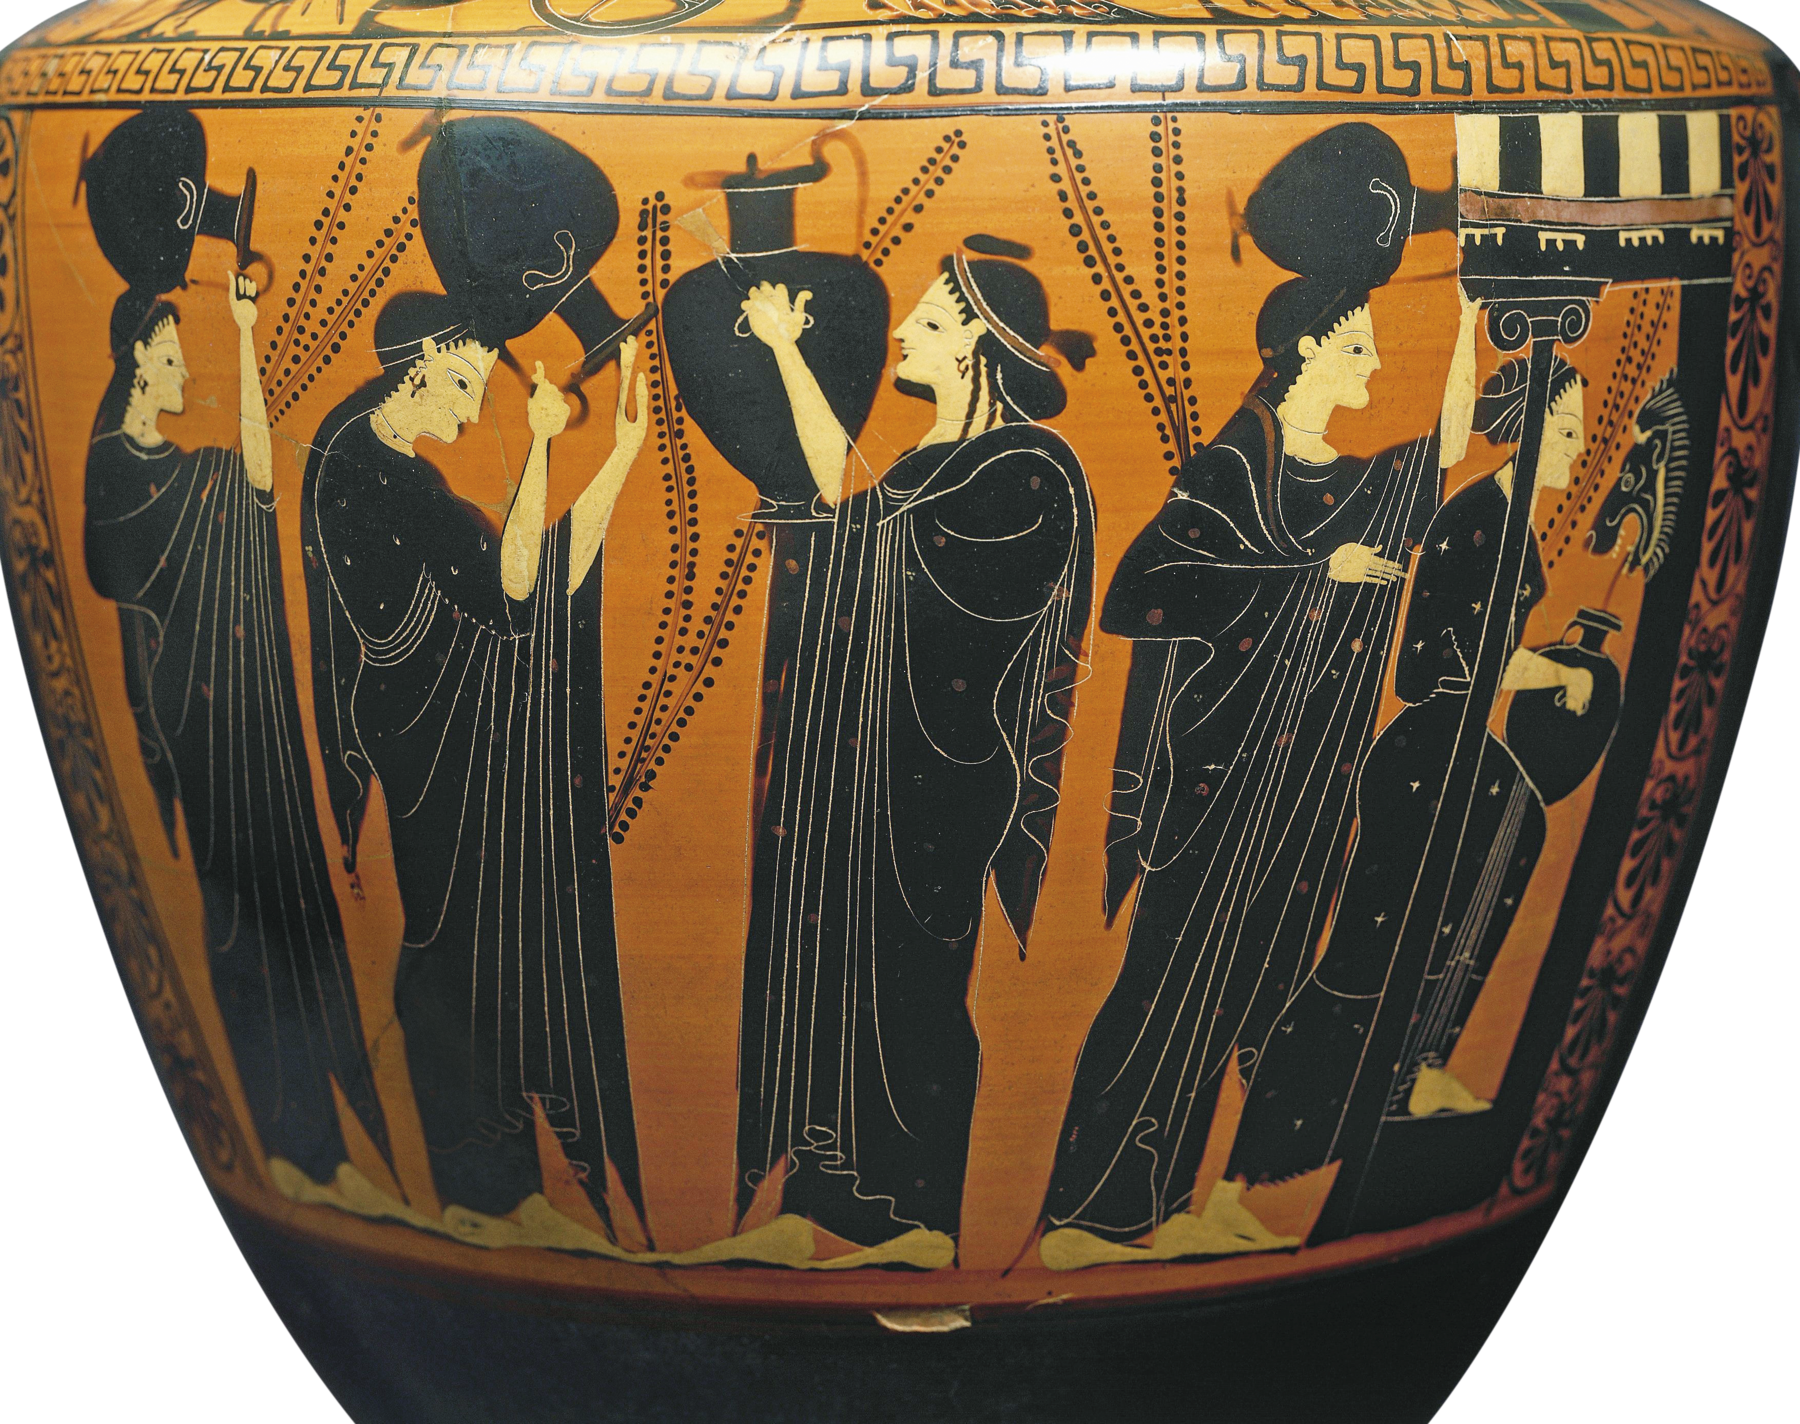 Fotografia. Detalhe de um vaso com a pintura na superfície amarelada. Mulheres de túnica preta seguram grandes jarros. Algumas estão com o jarro acima da cabeça.